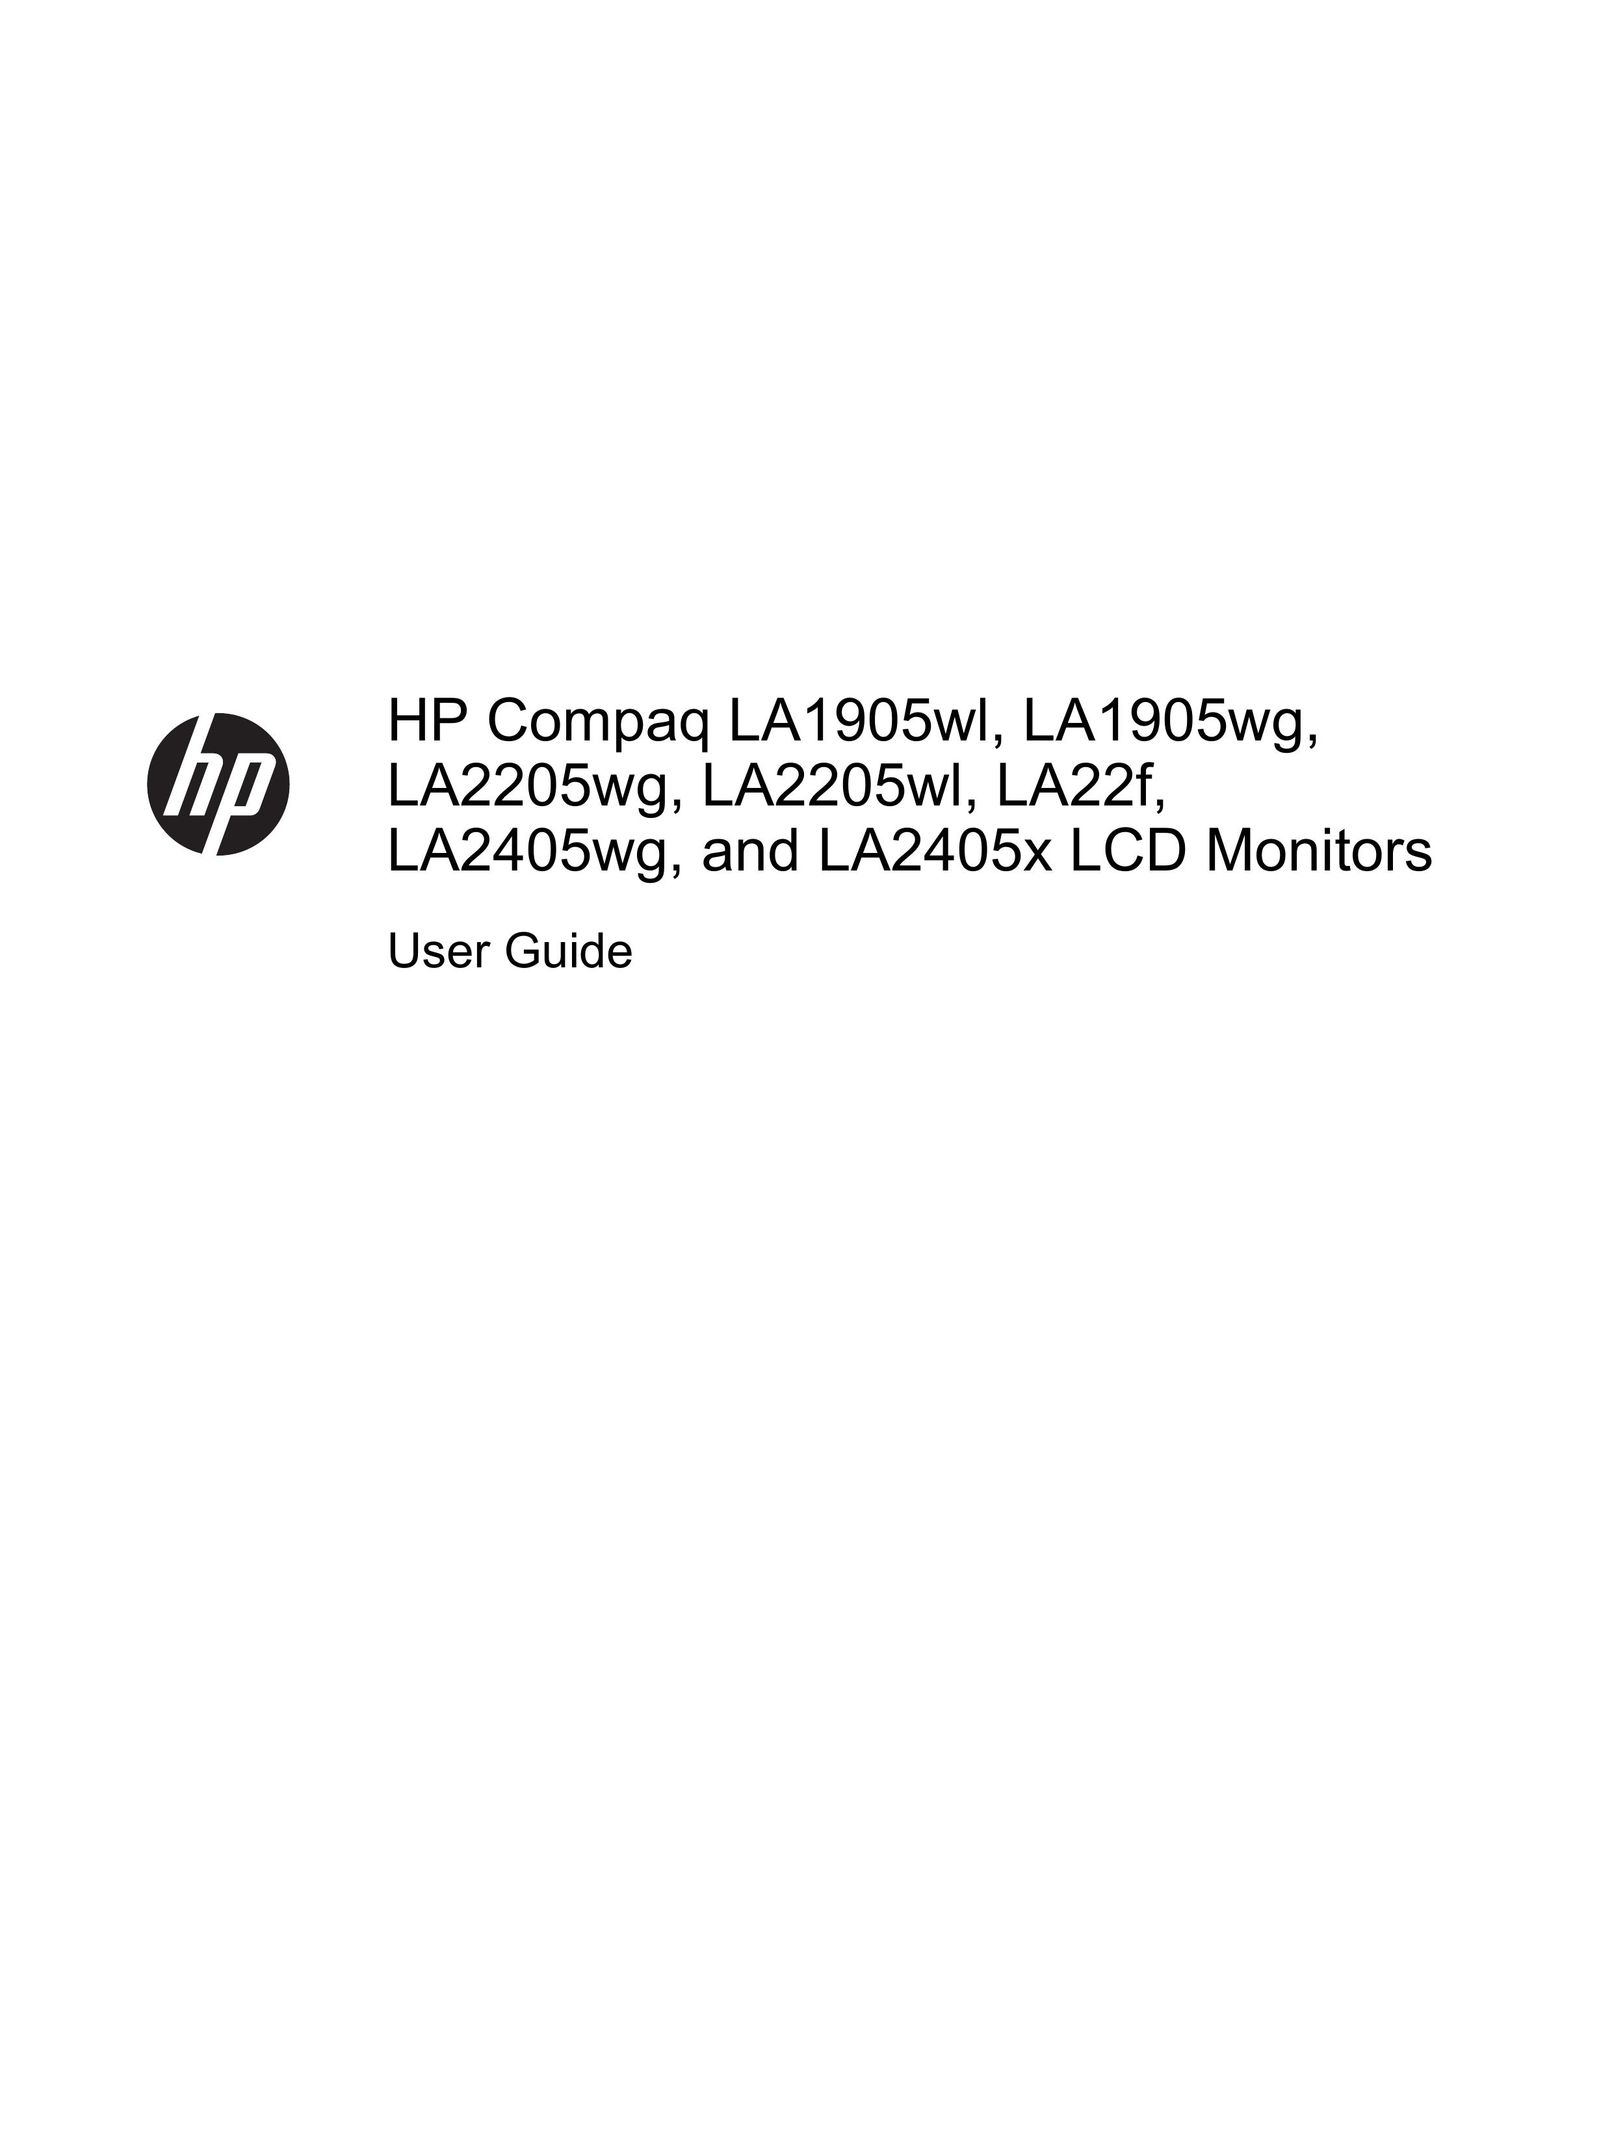 HP (Hewlett-Packard) LA22F Car Video System User Manual